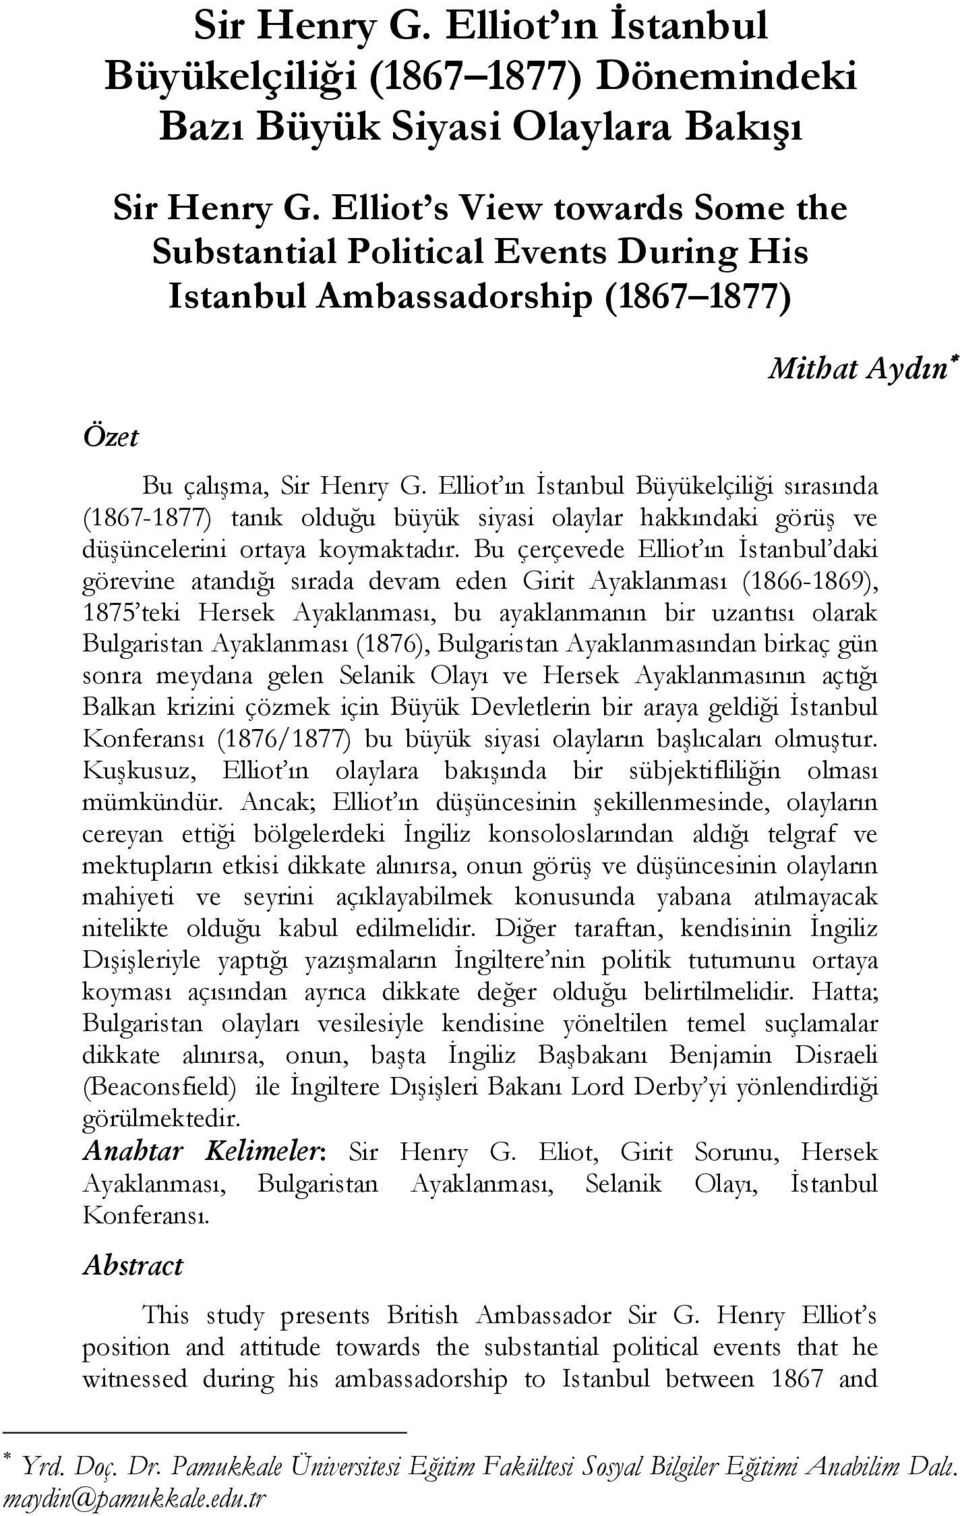 Elliot ın İstanbul Büyükelçiliği sırasında (1867-1877) tanık olduğu büyük siyasi olaylar hakkındaki görüş ve düşüncelerini ortaya koymaktadır.